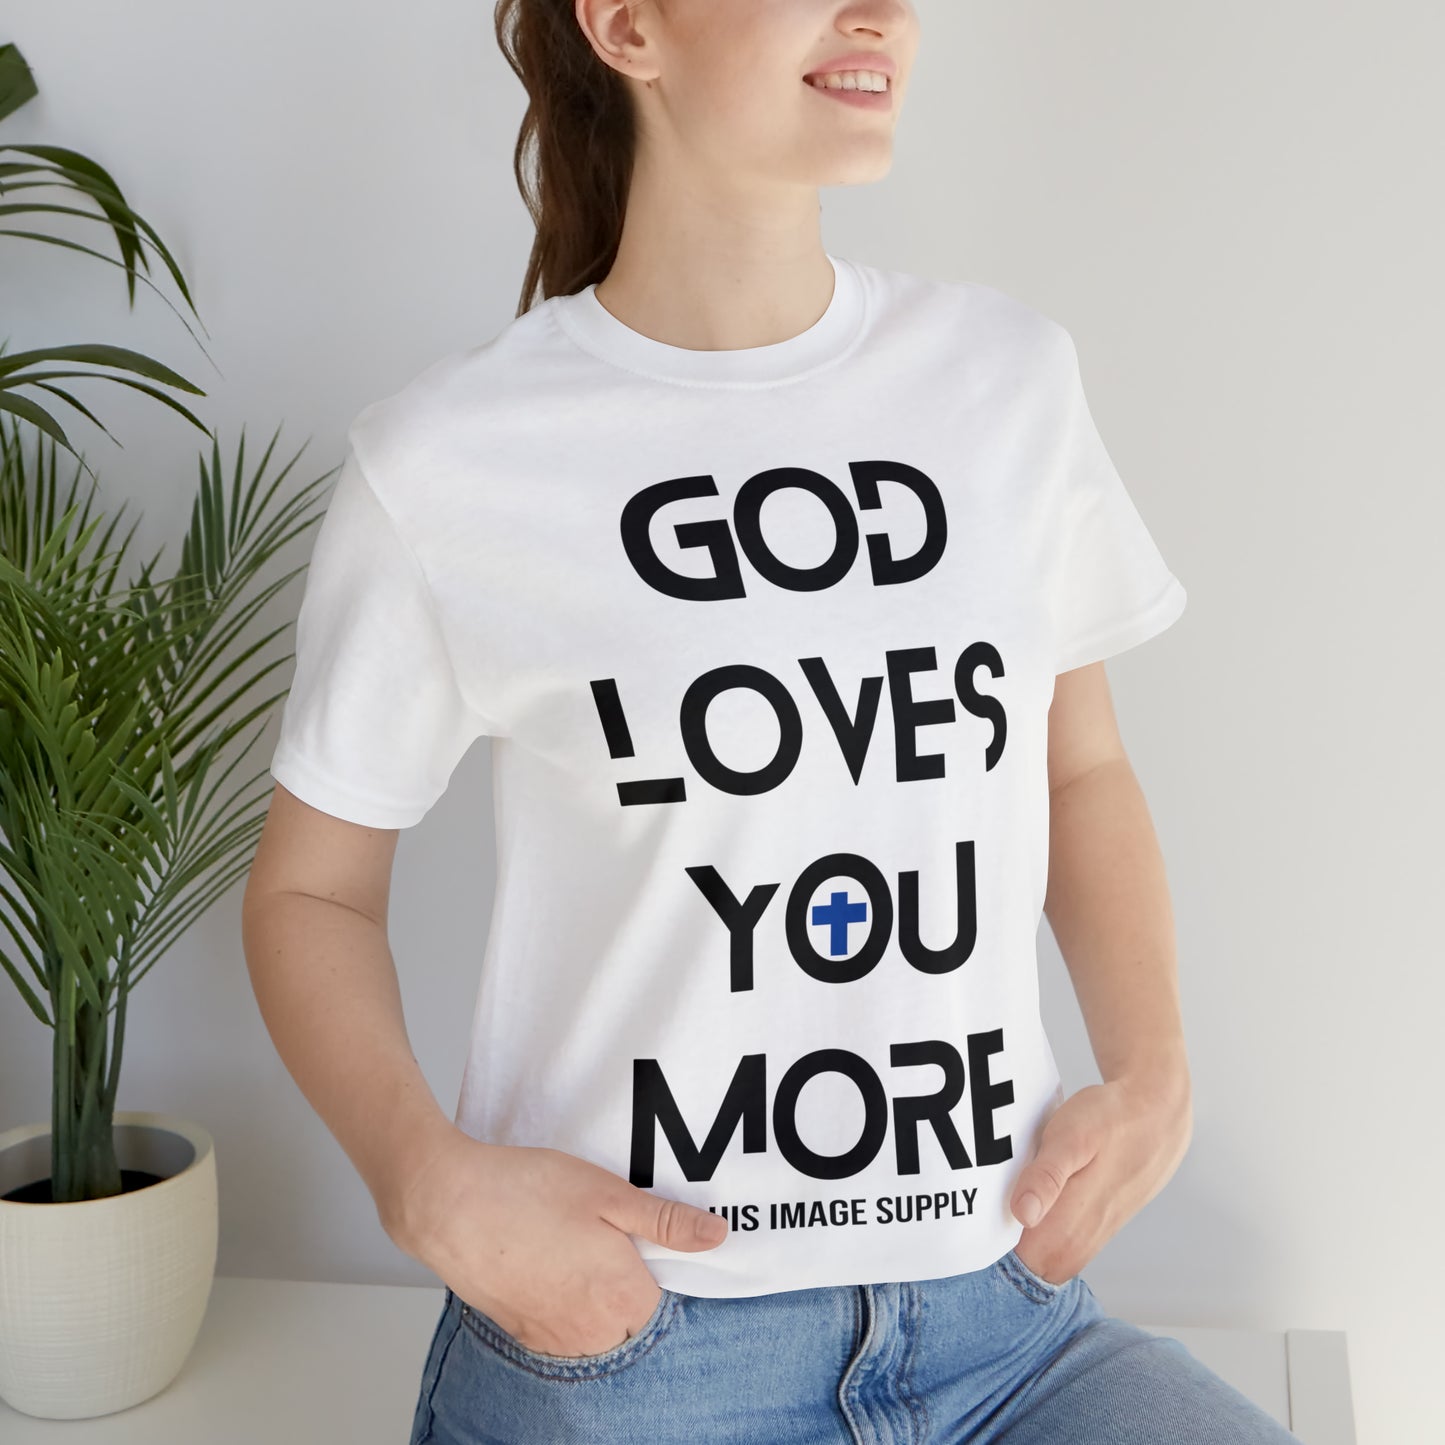 God Loves You More v1.0 Tee